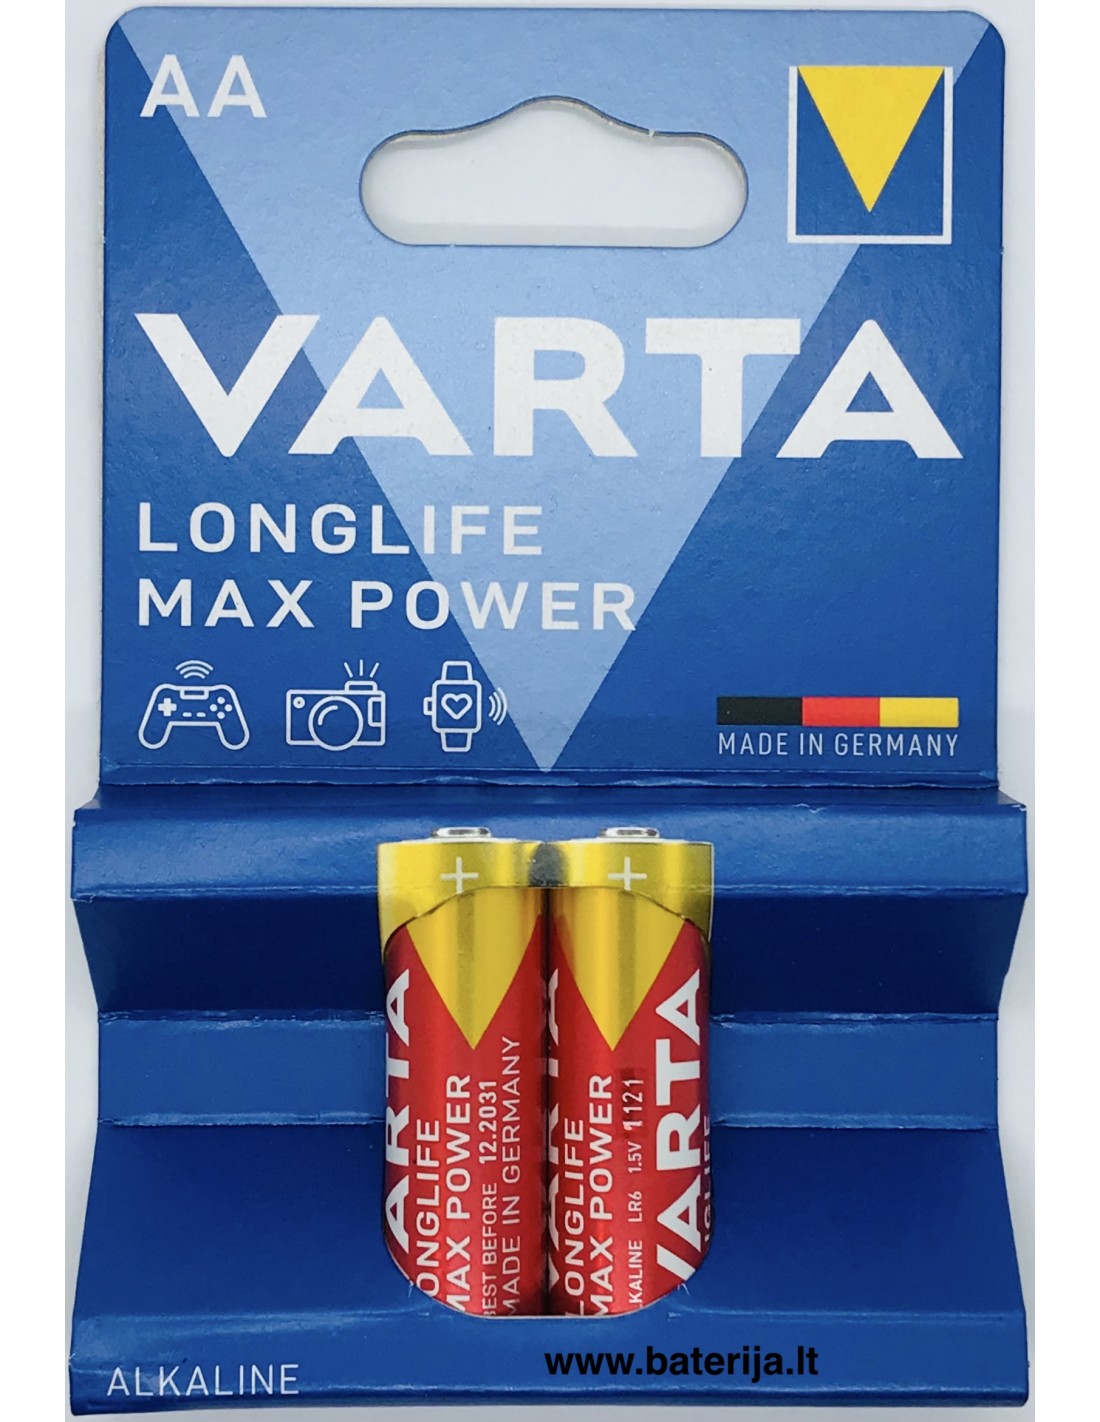 Varta 4706 Alkaline Max Tech AA Batteries, 4 Pack (Blue/Red)